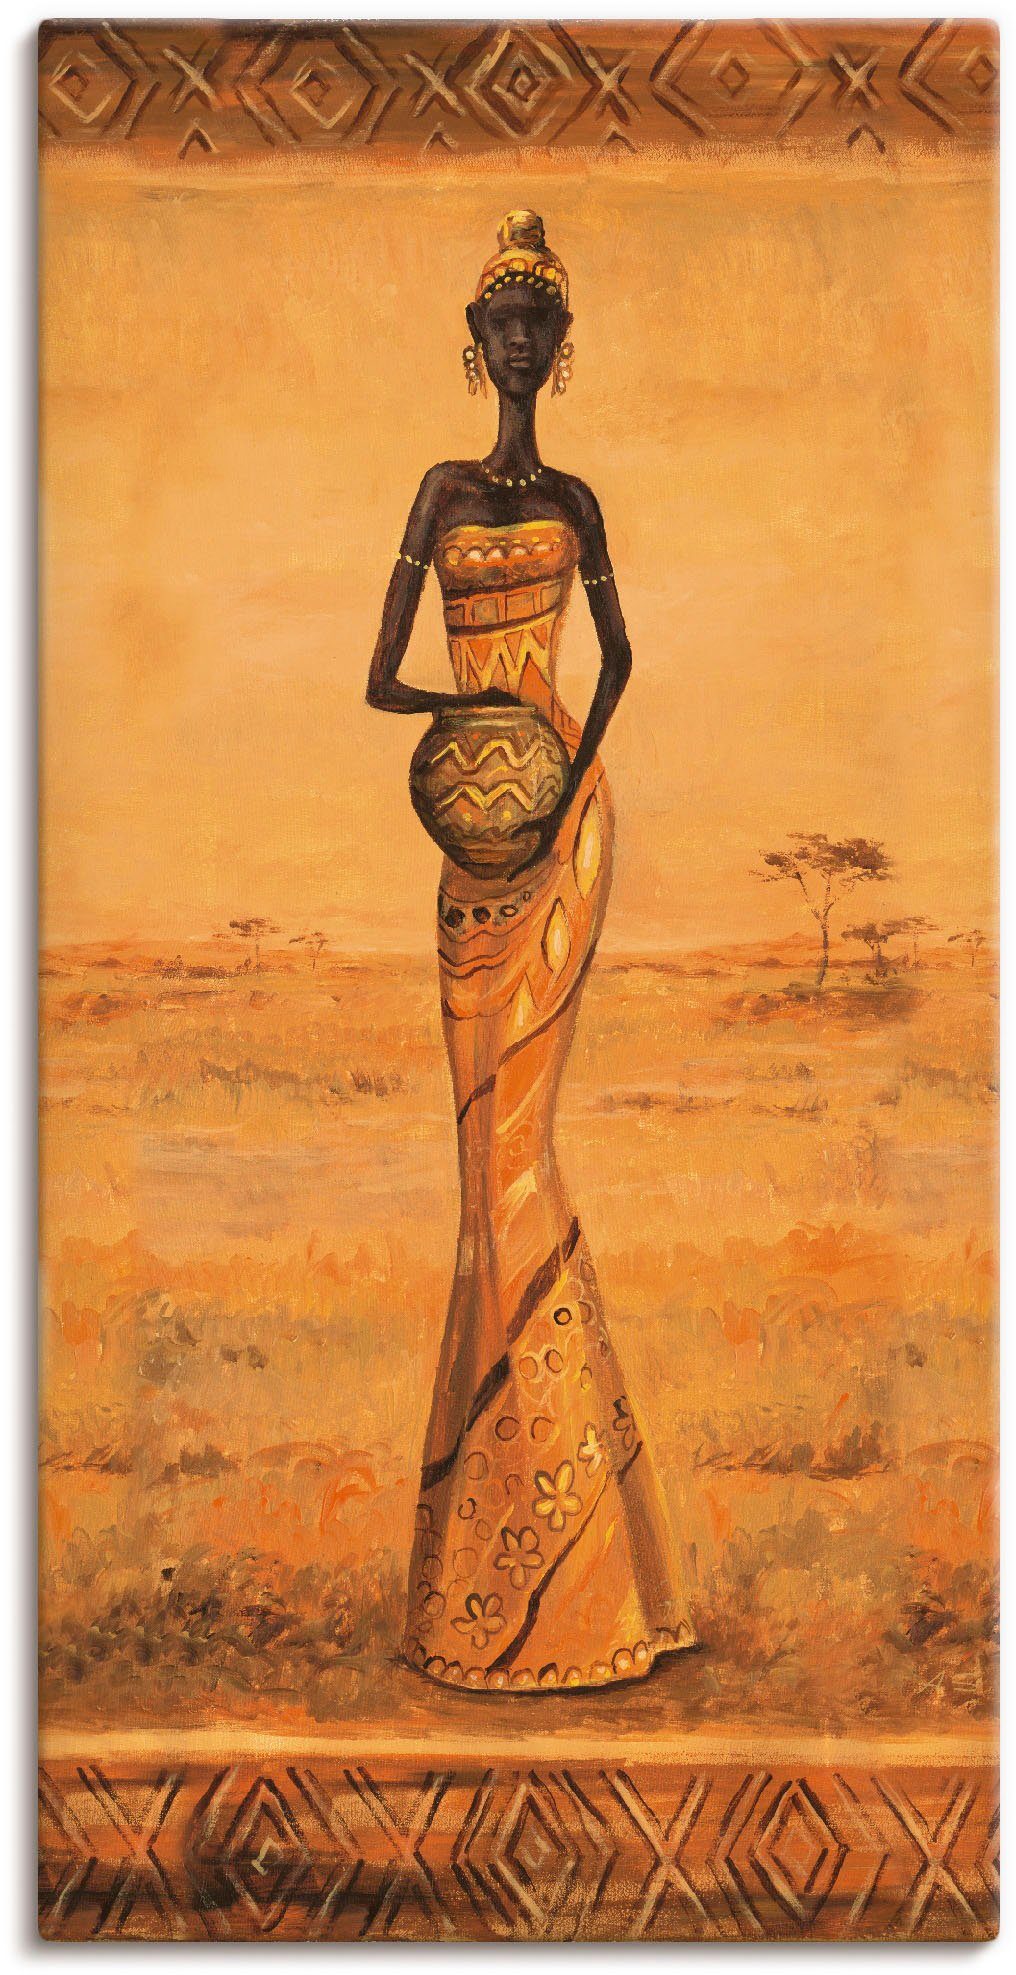 Artland Artprint Afrikaanse Elegantie III in vele afmetingen & productsoorten - artprint van aluminium / artprint voor buiten, artprint op linnen, poster, muursticker / wandfolie o